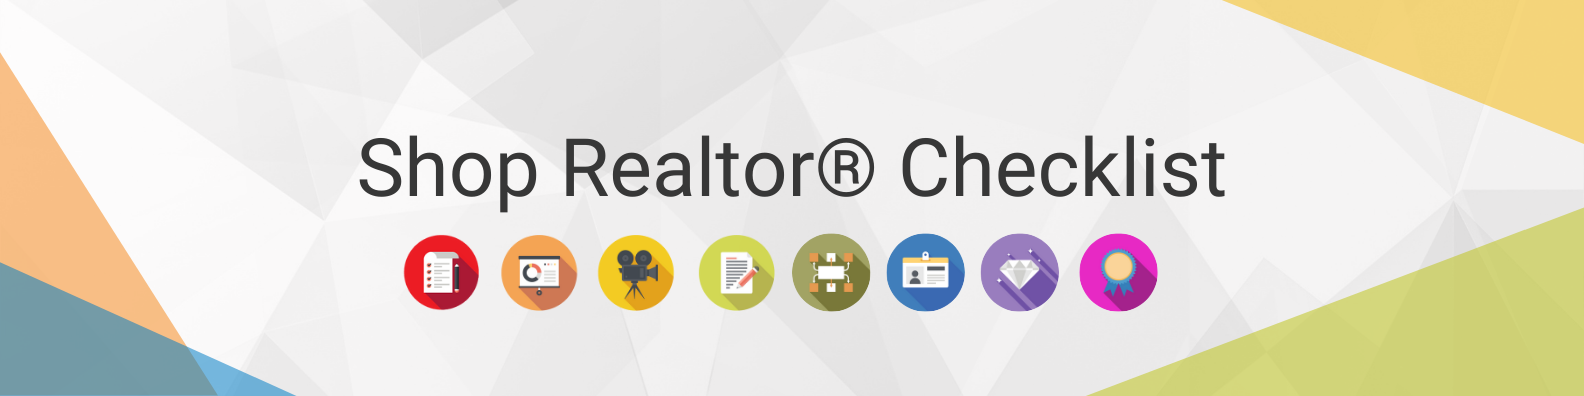 Shop Realtor® Checklist